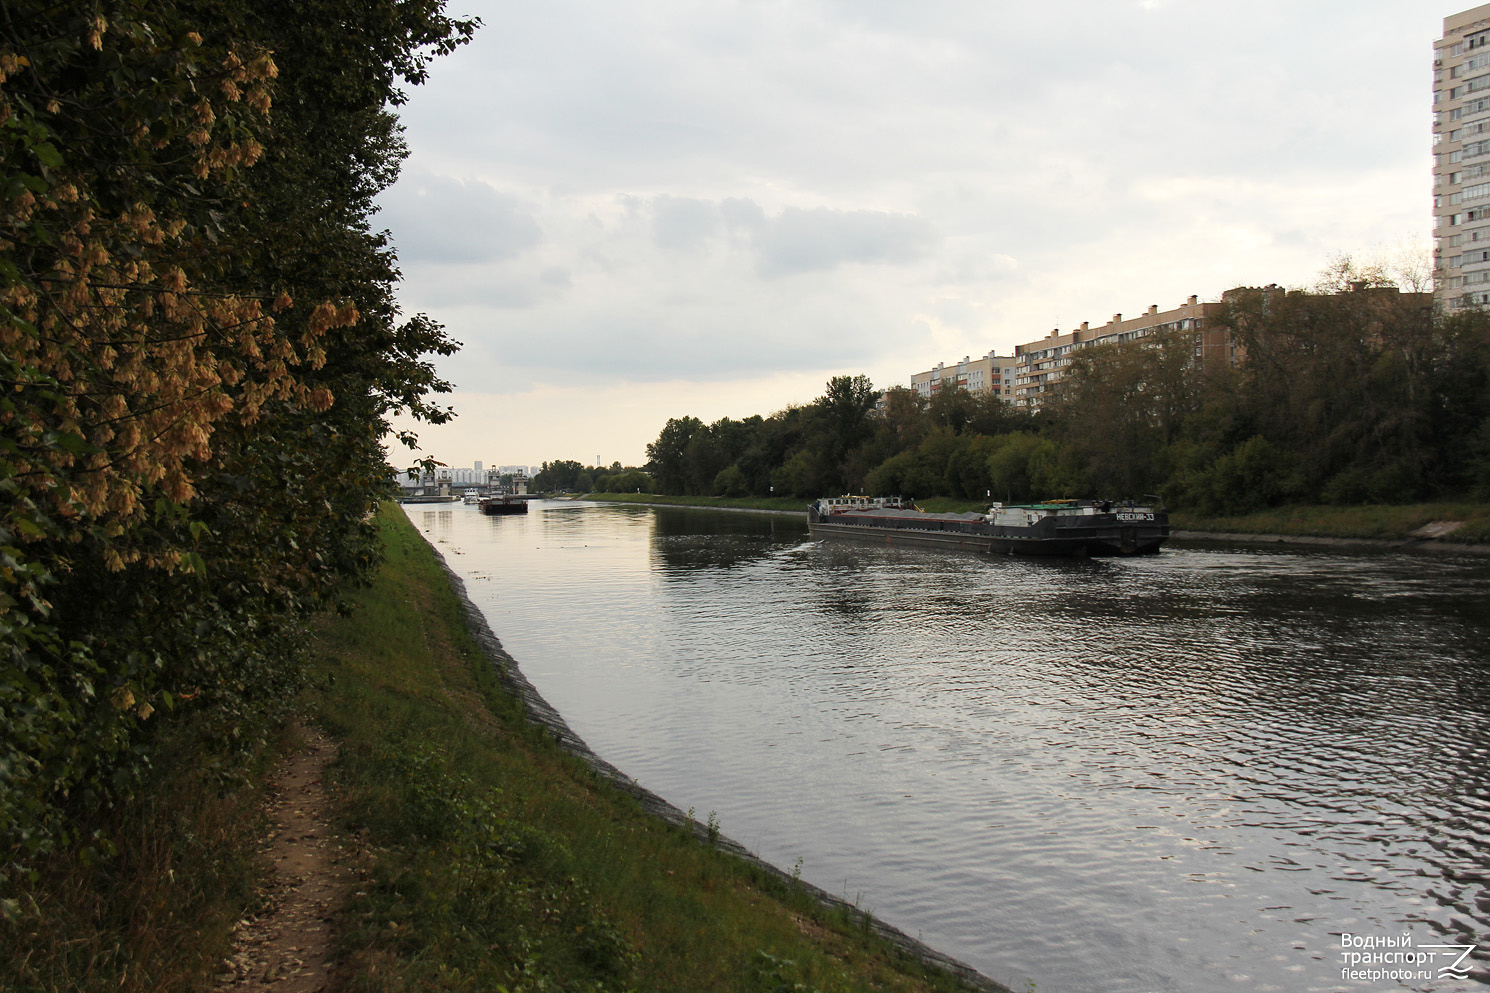 Невский-33. Moscow Canal